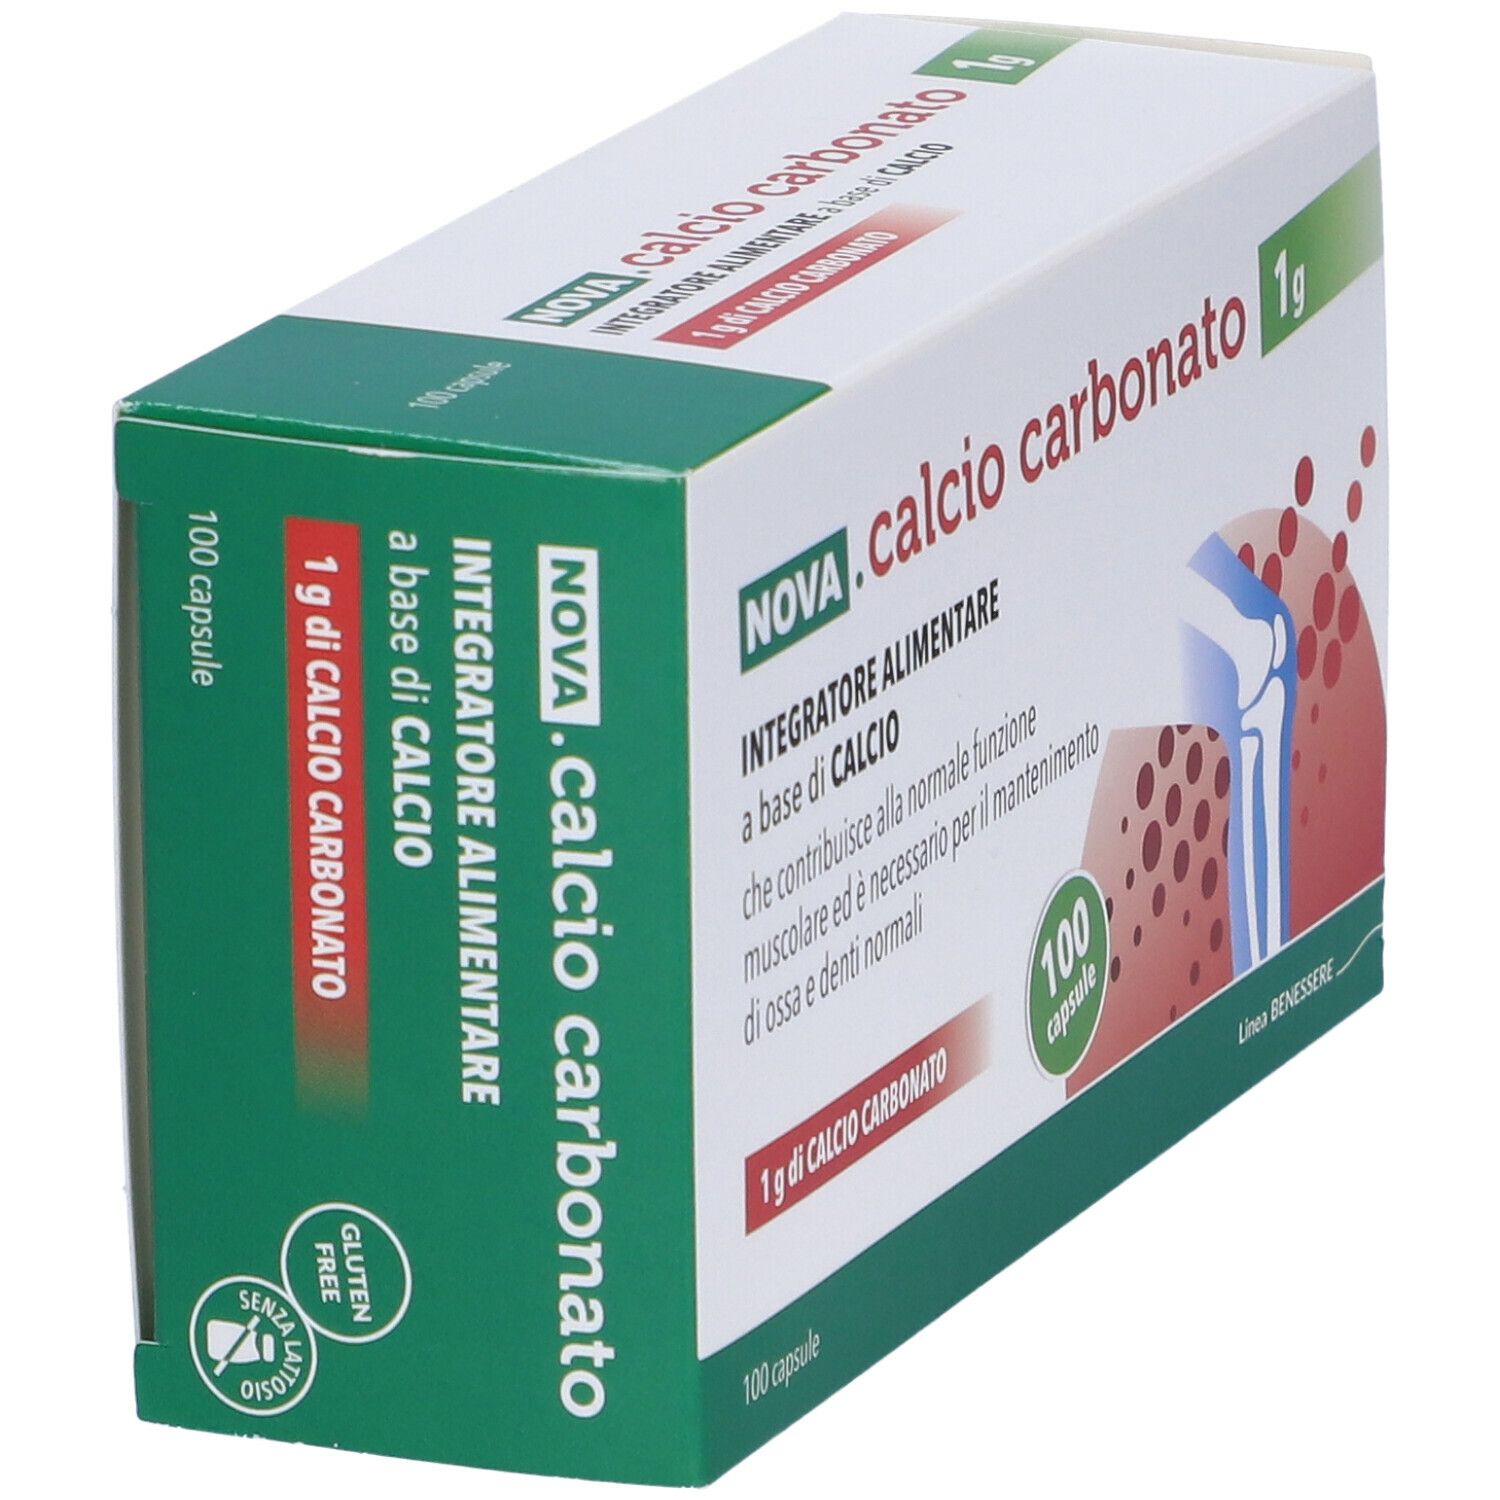 NOVA ARGENTIA - Calcio Carbonato 0,5 G - Bone Health Supplement 100 Capsules